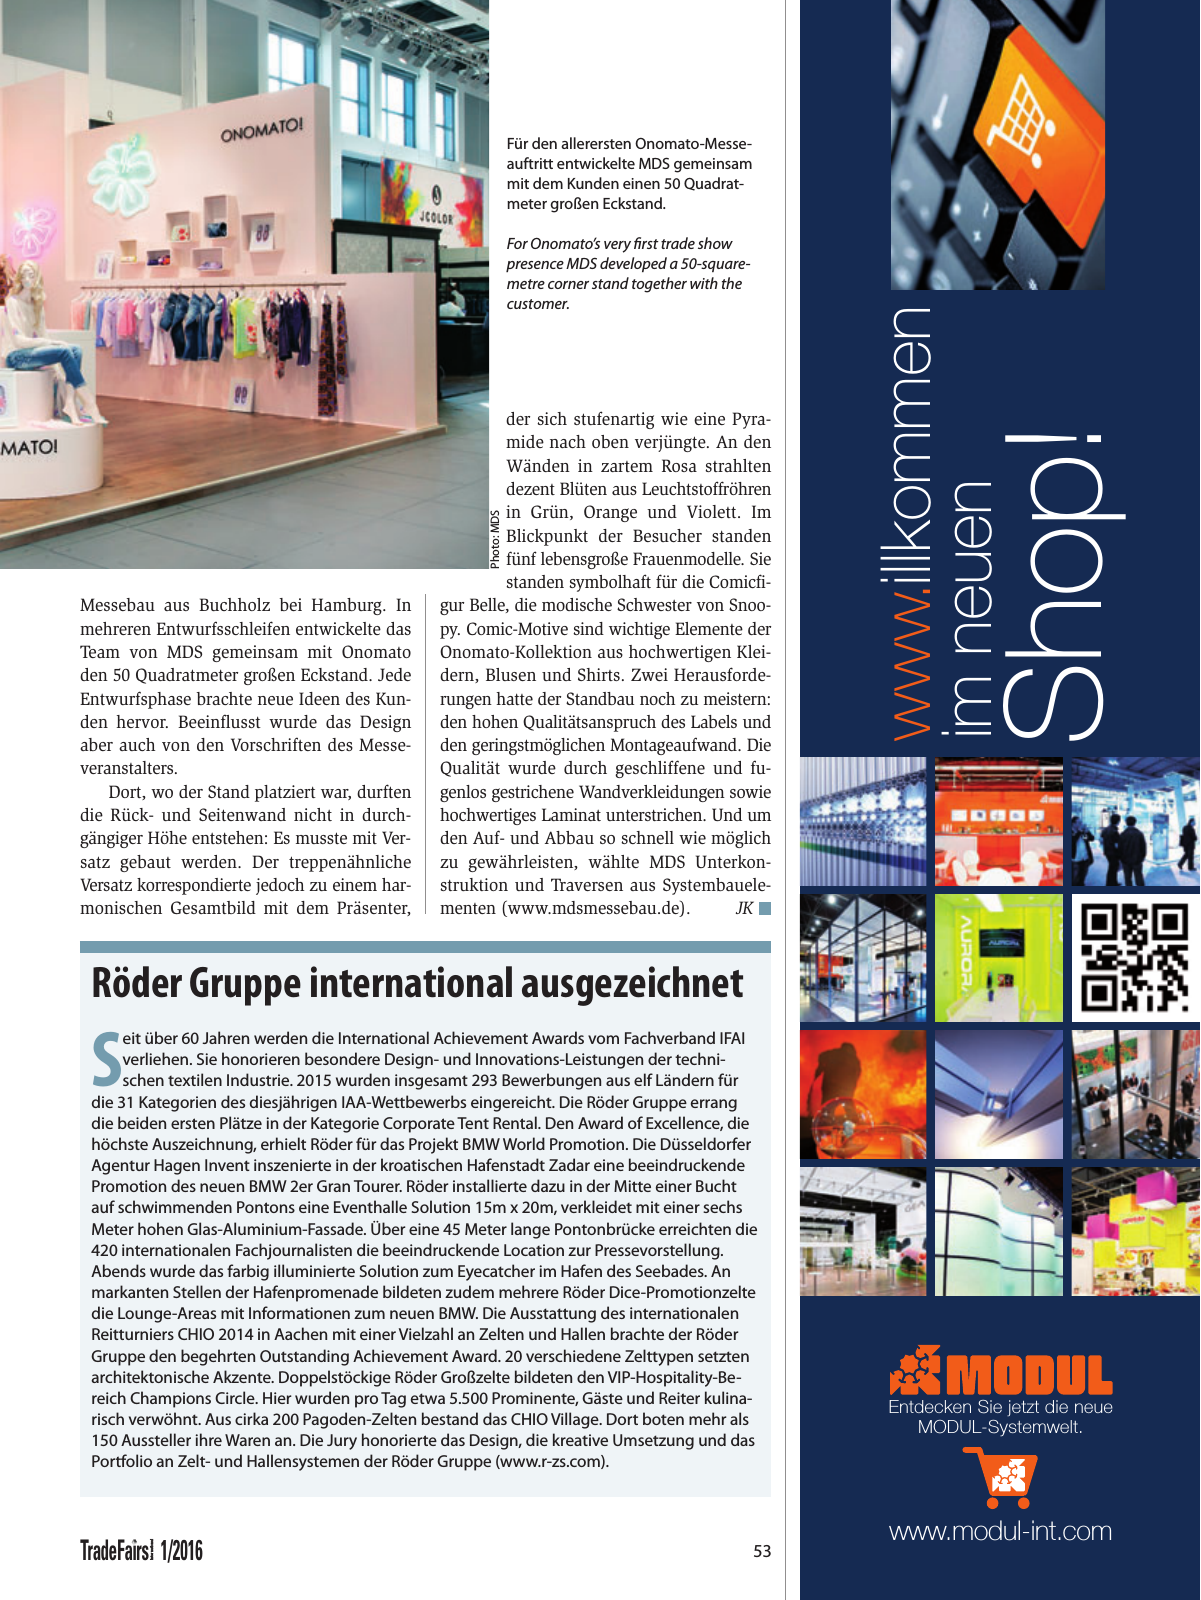 Vorschau TFI Trade-Fairs-International 01/2016 Seite 53